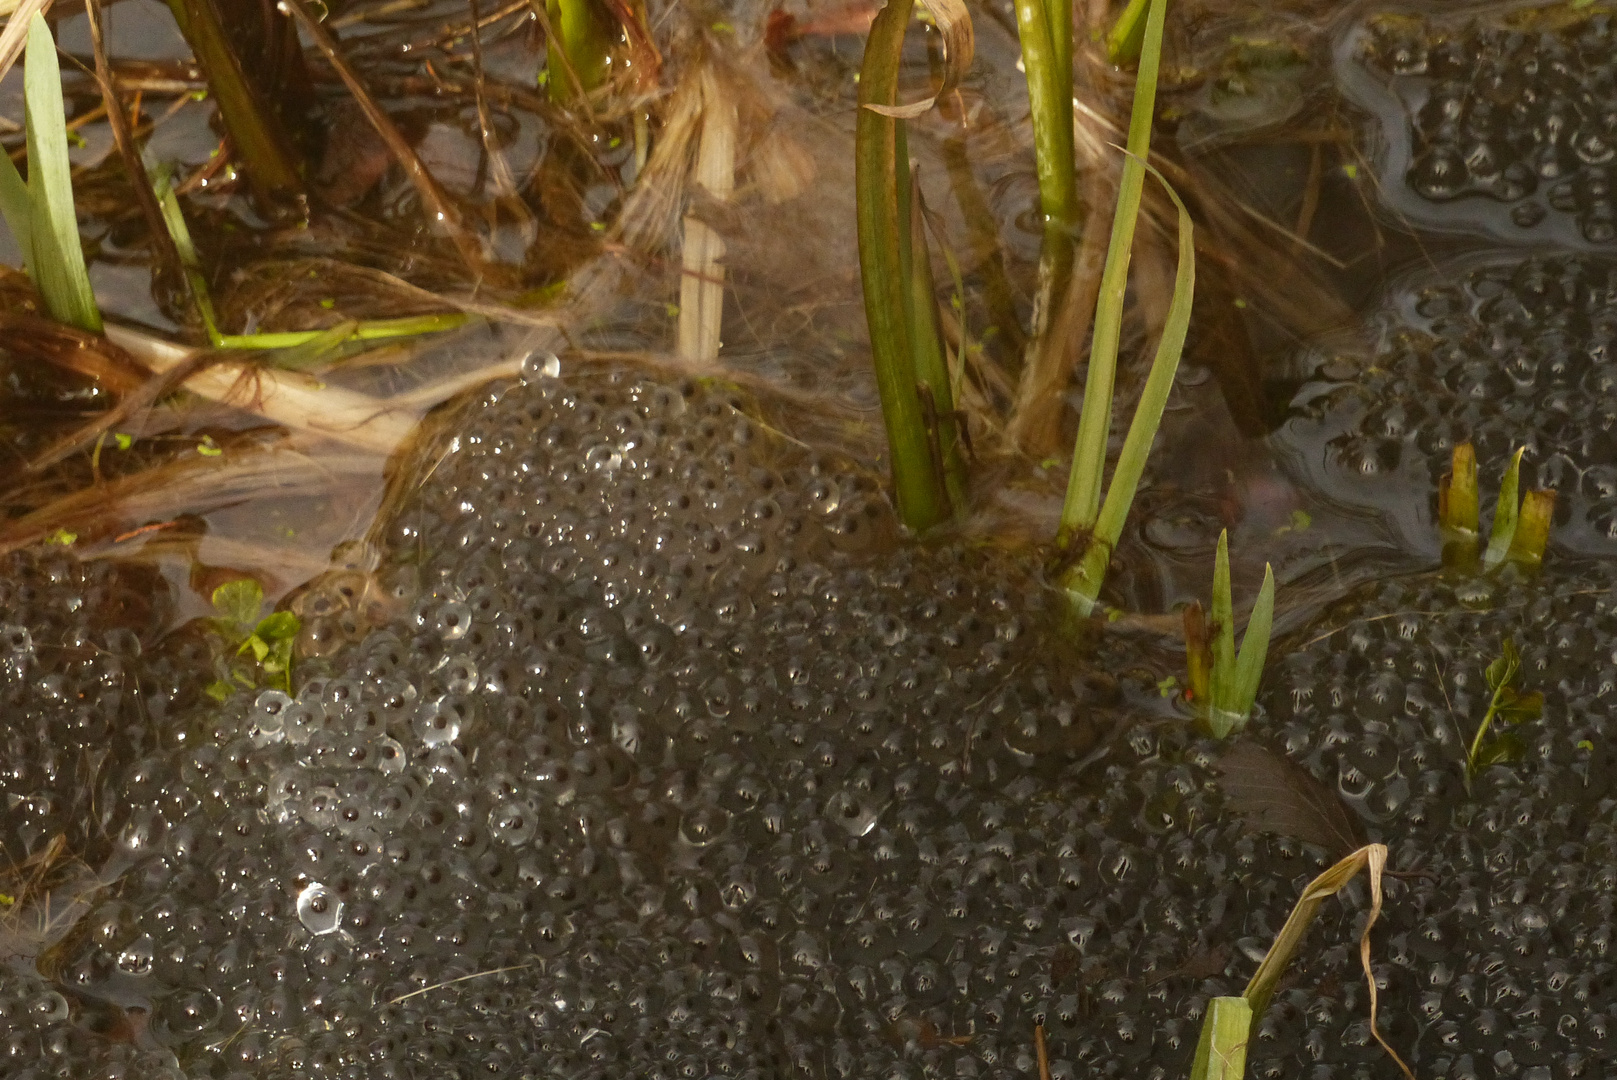 Froschlaich im Teich Foto amp Bild jahreszeiten fr 252 hling natur Bilder auf fotocommunity